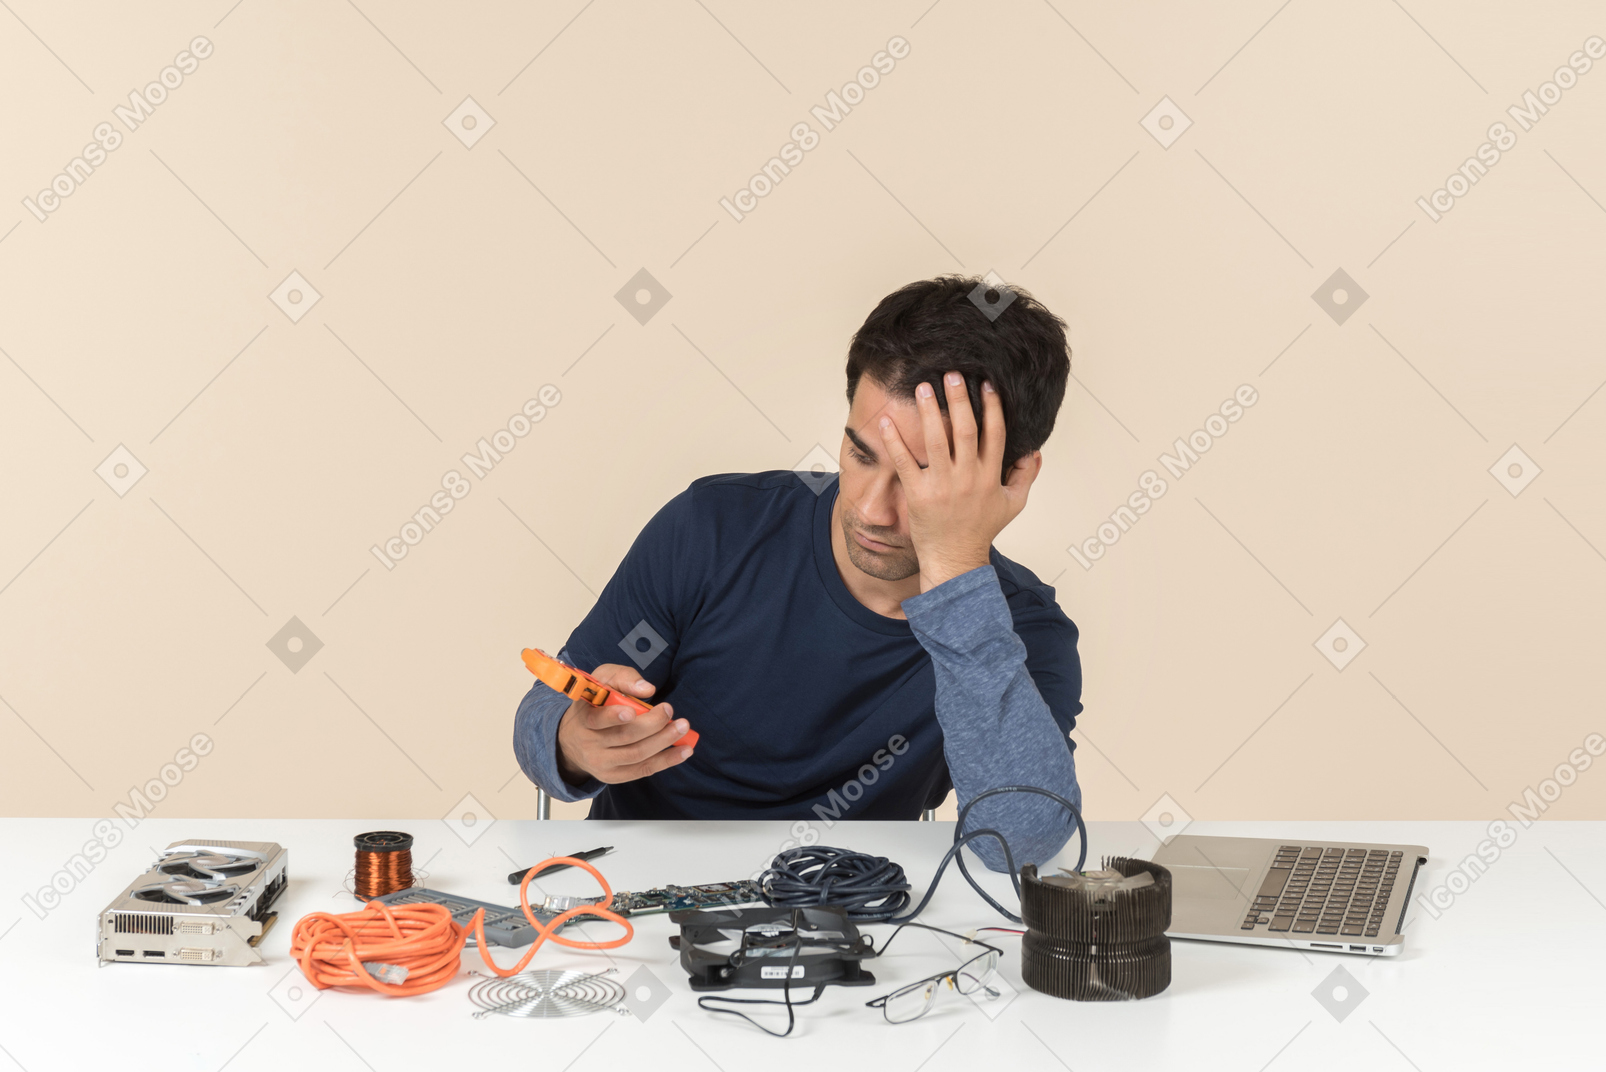 Молодой человек в синей одежде, работающий с деталями компьютера